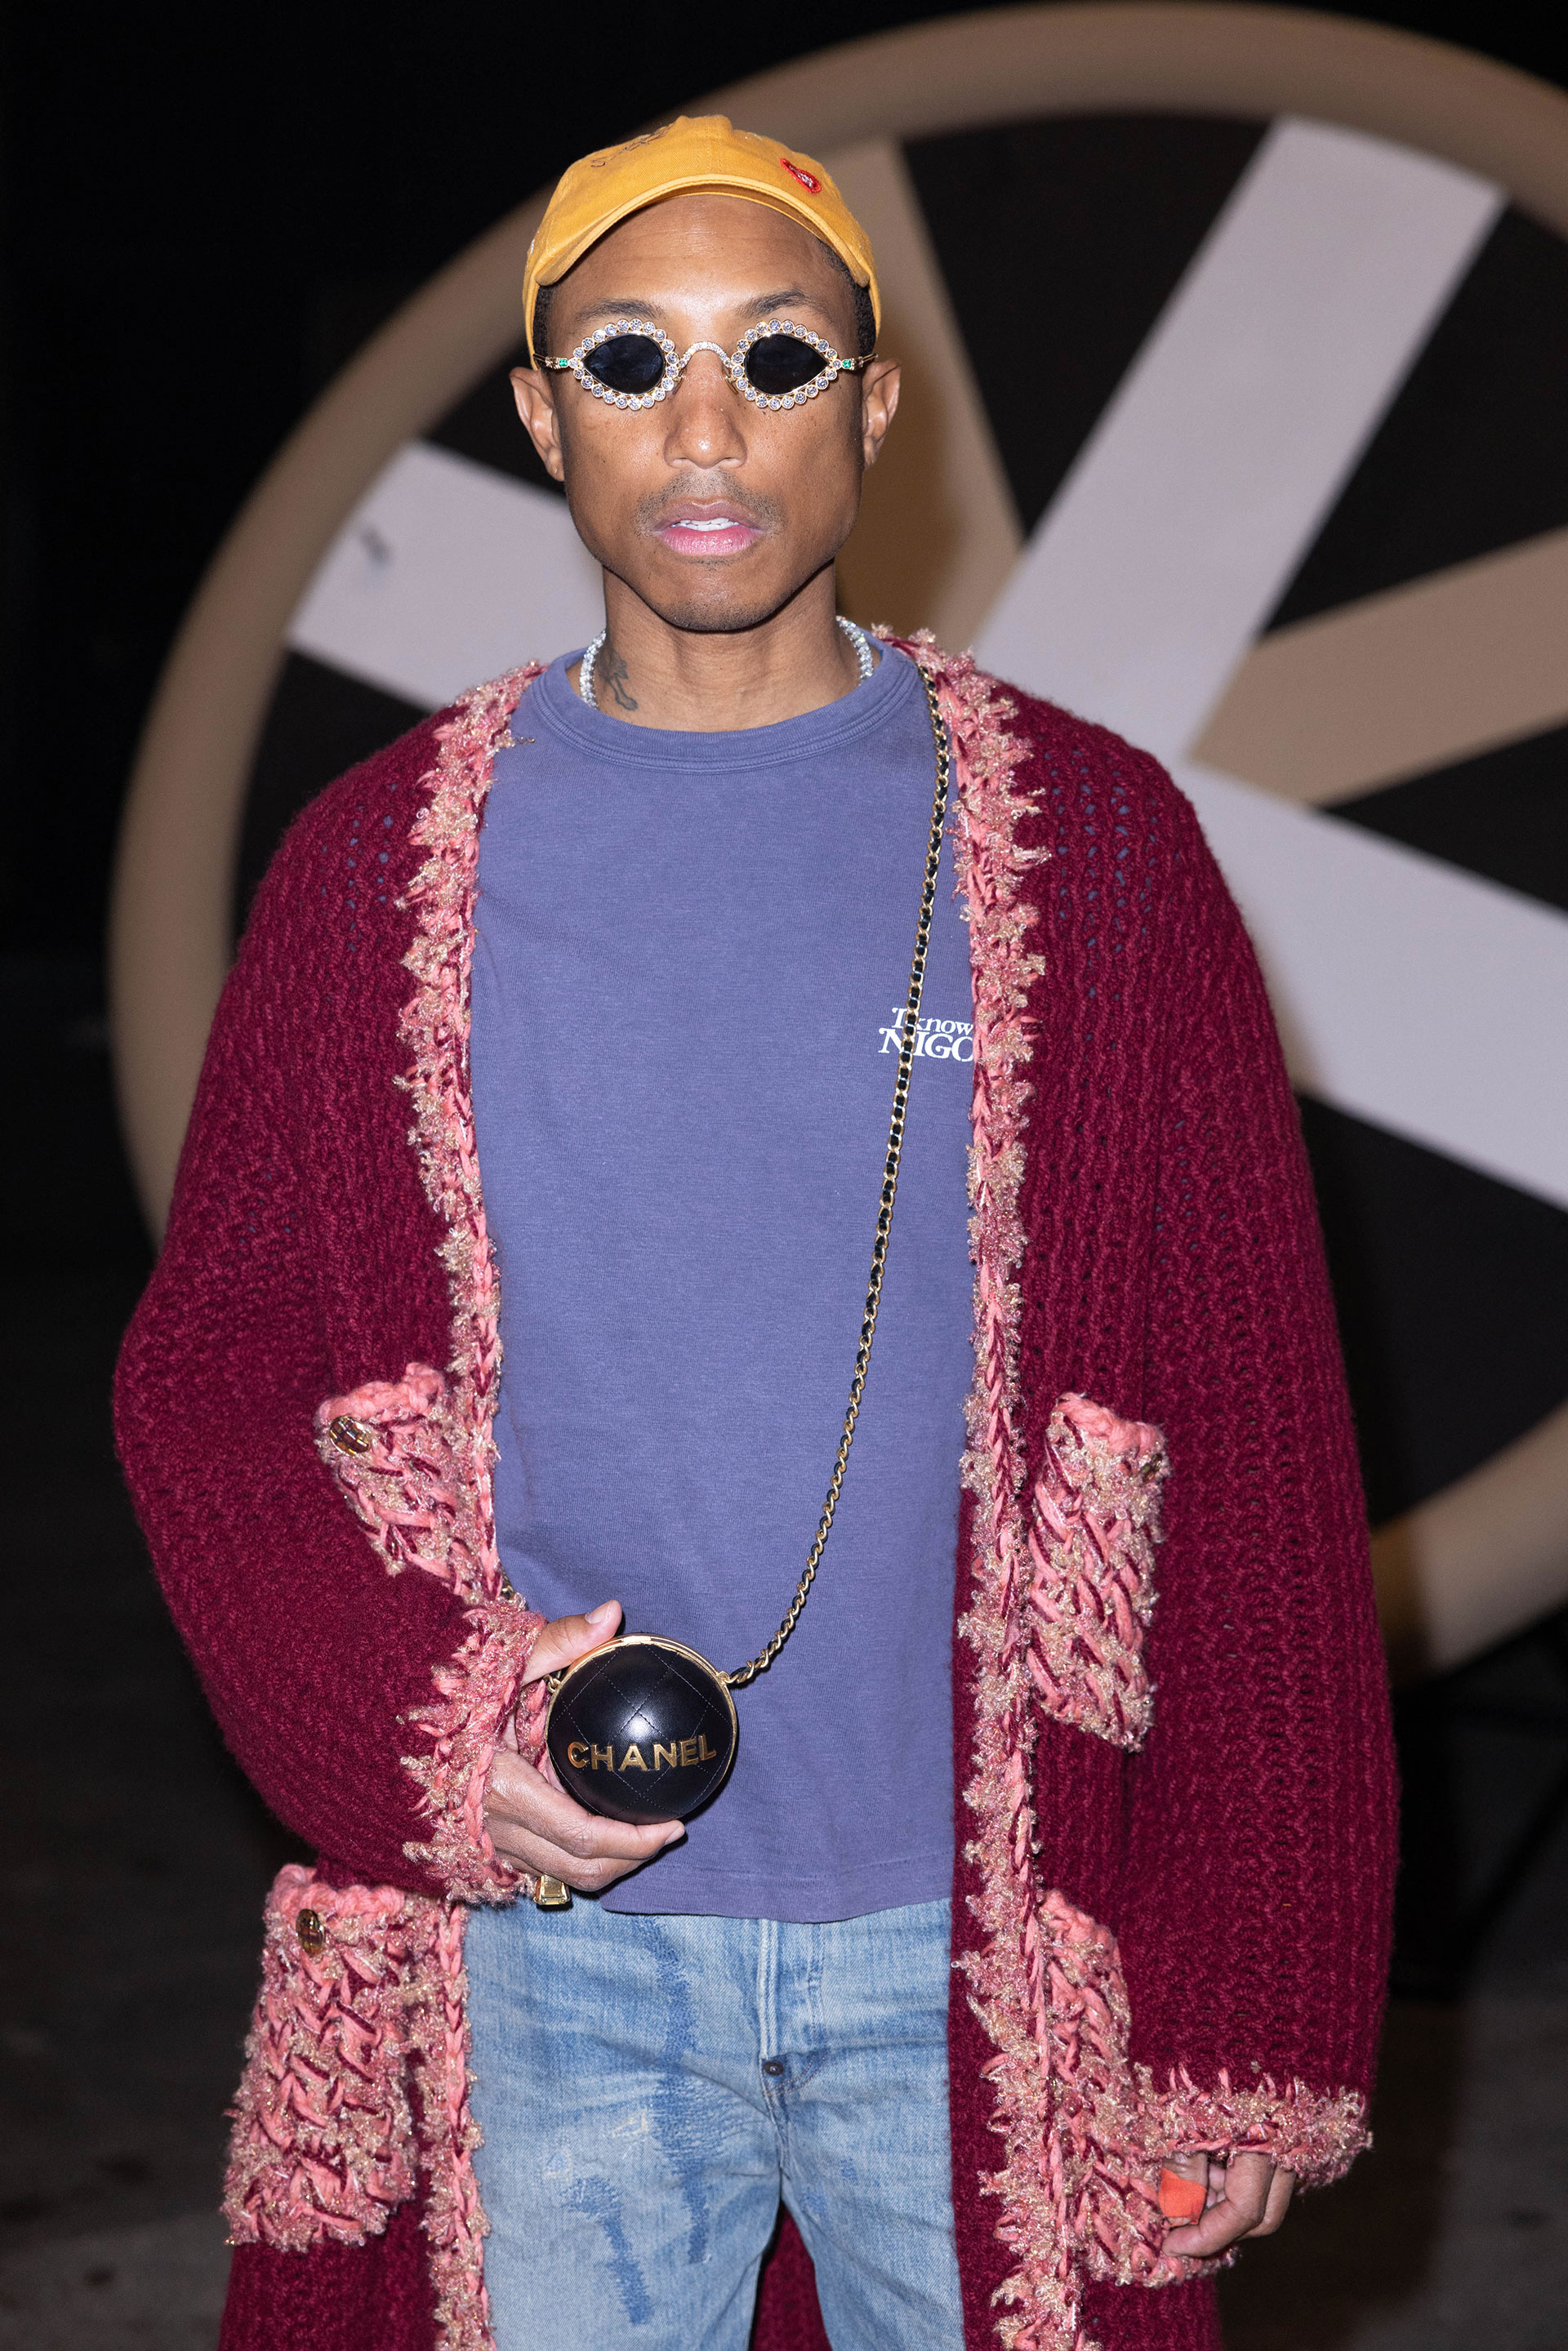 No pasó desapercibido. Pharrell Williams asistió a un importante desfile de París. Para ello, lució un jean clarito, una remera violeta, un saco de lana bordó y rosa, lentes de sol con strass y una gorra amarilla. Además, llevó una cartera Chanel y una campera animal print 